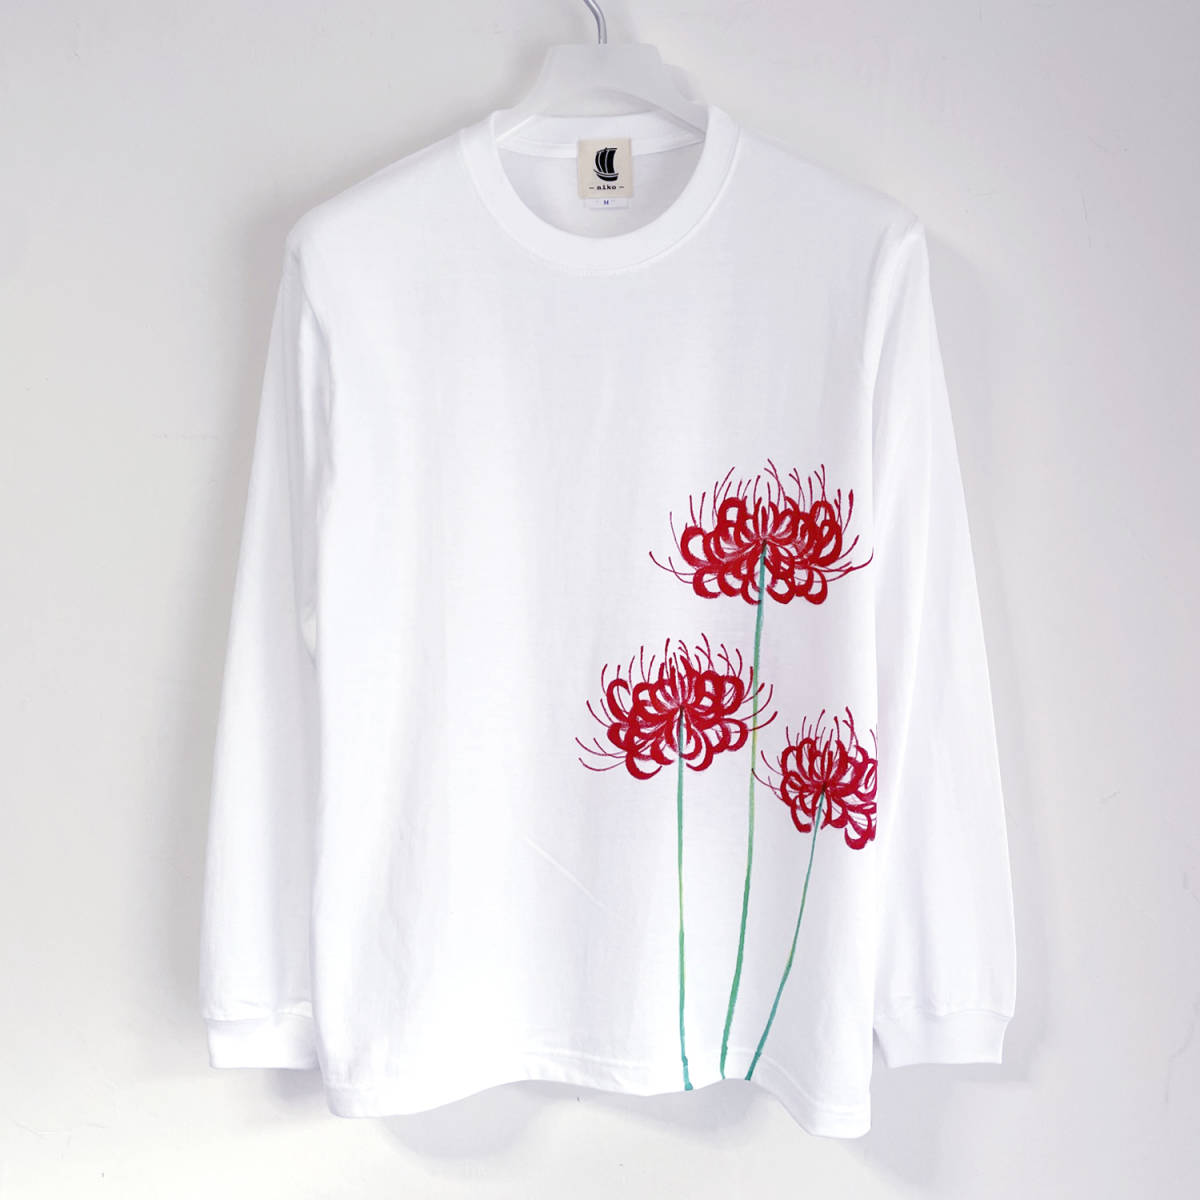 히간바나 패턴 티셔츠, 하얀색, S 사이즈, 핸드 드로잉 긴소매 티셔츠, 골지 소매로, 긴 티셔츠, 꽃무늬, 일본식 디자인, 흰색, 티셔츠, 긴팔, 작은 크기